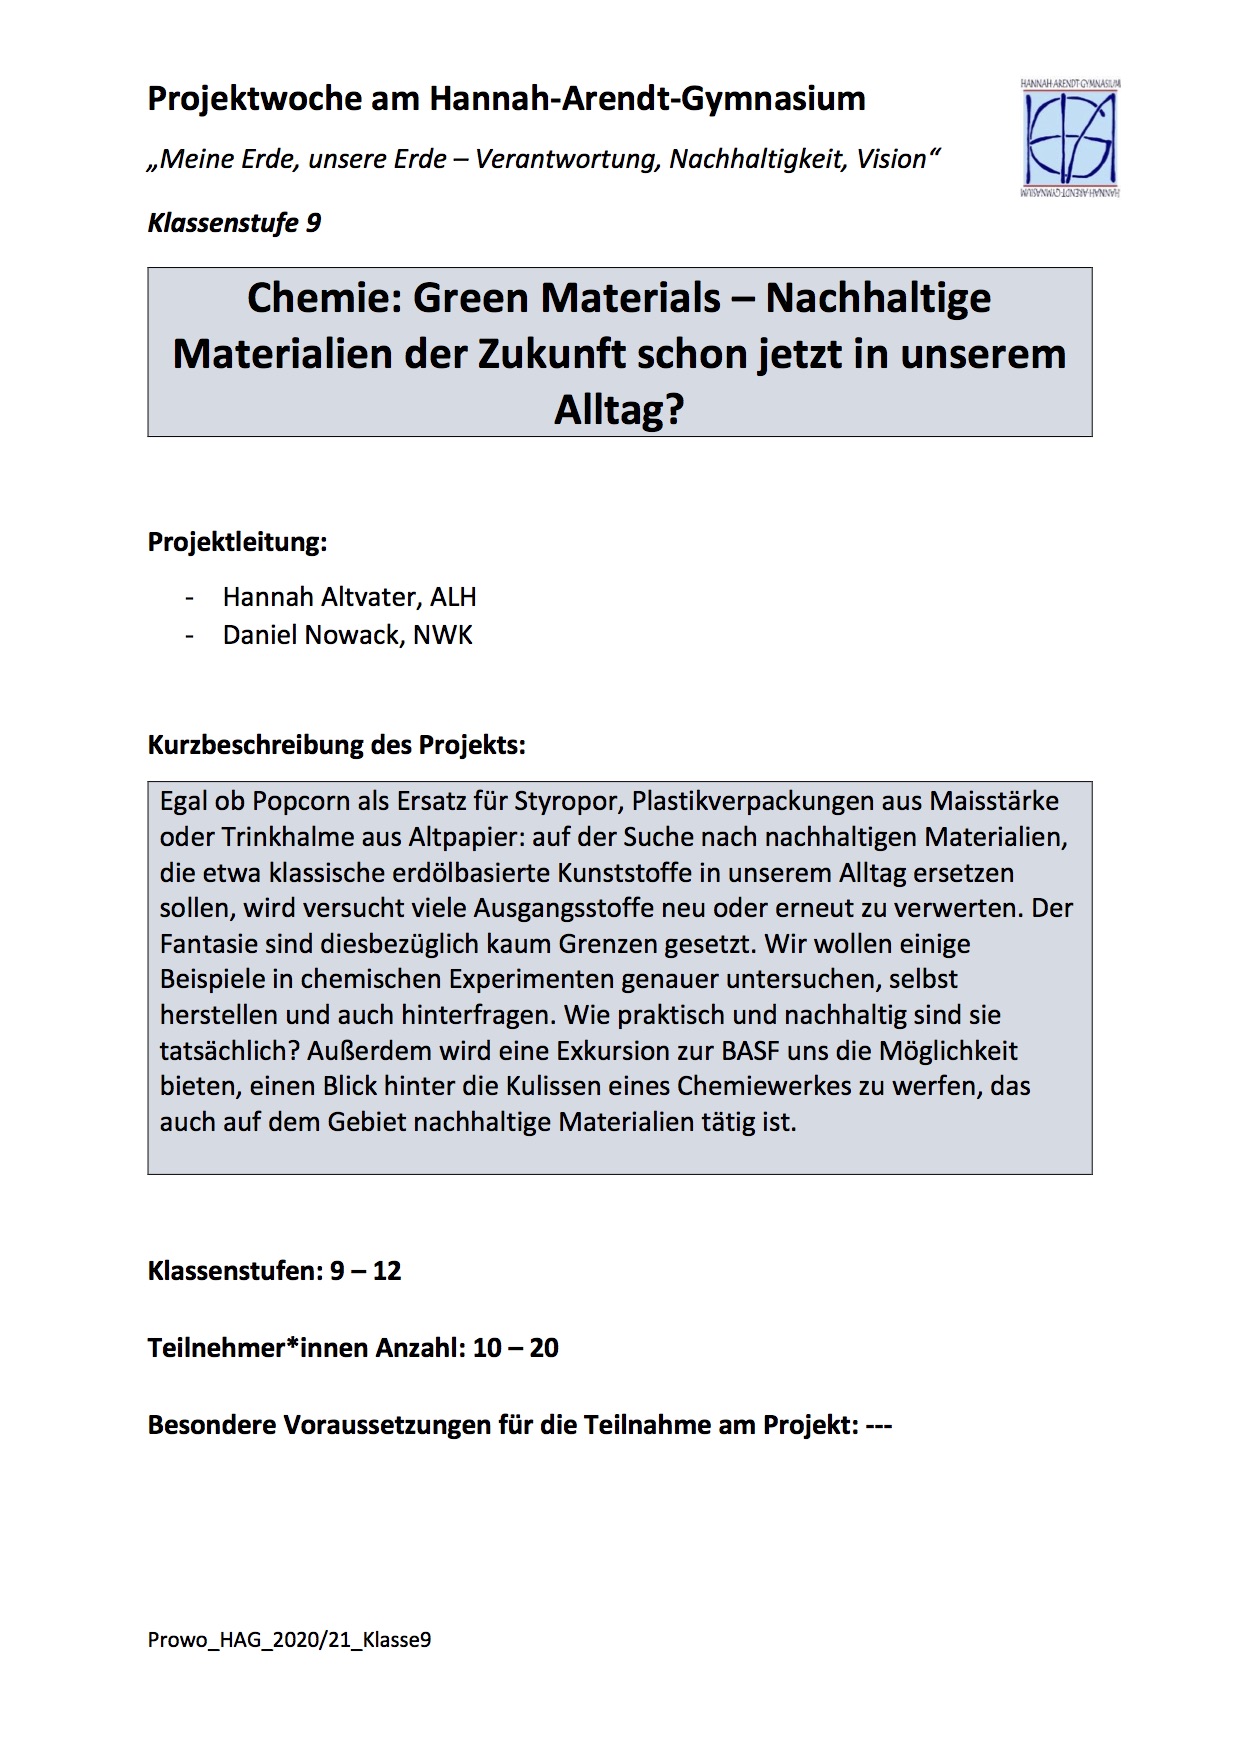 Chemie: Green Materials - Nachhaltige Materialien der Zukunft schon jetzt in unserem Alltag 